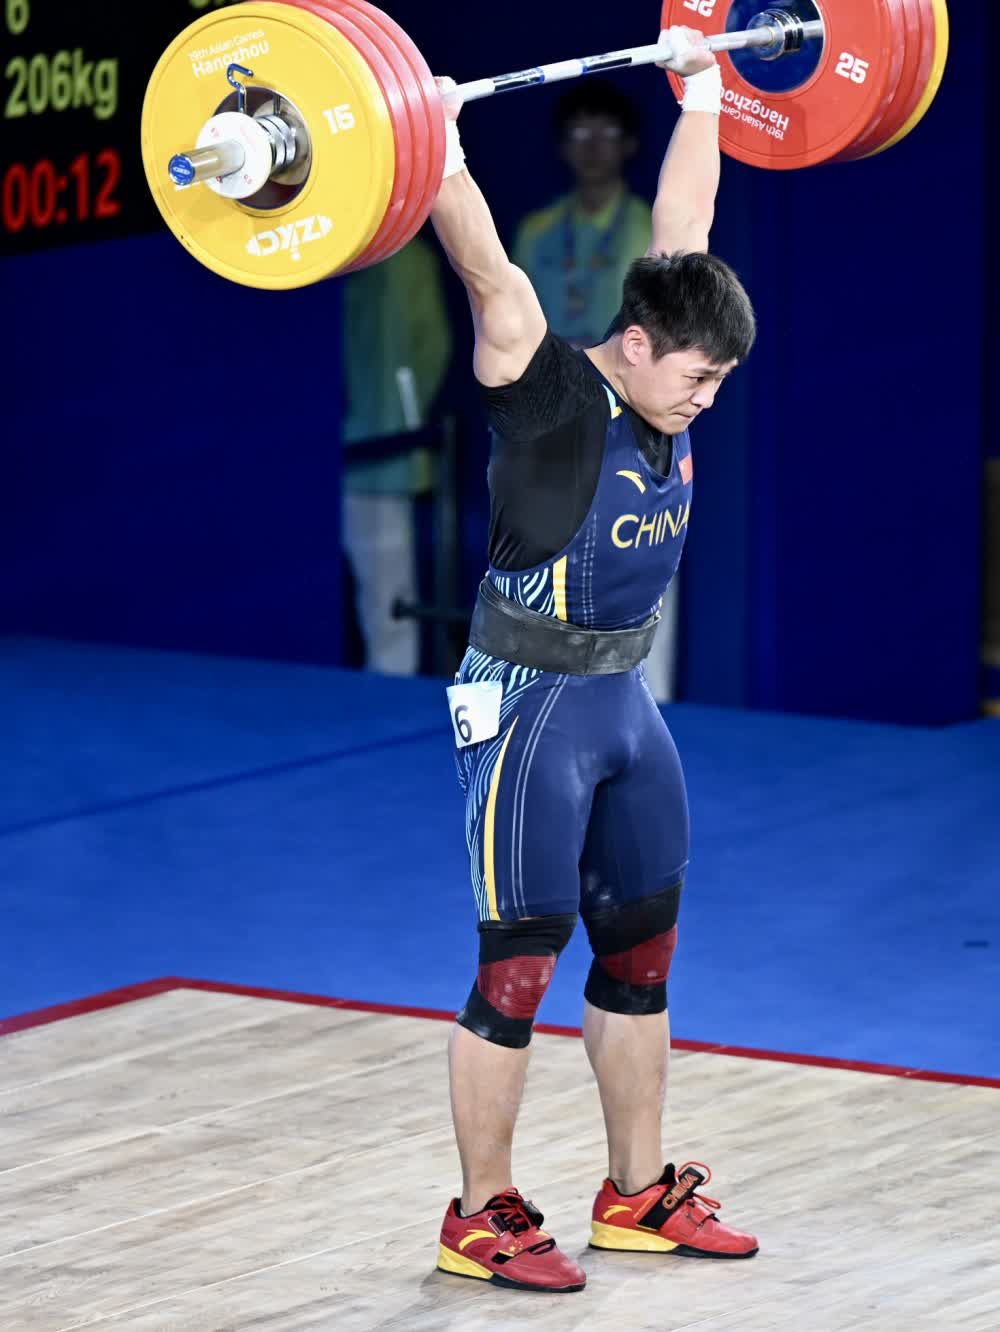 图片新闻重庆选手李大银获得杭州亚运会举重男子96公斤级第四名